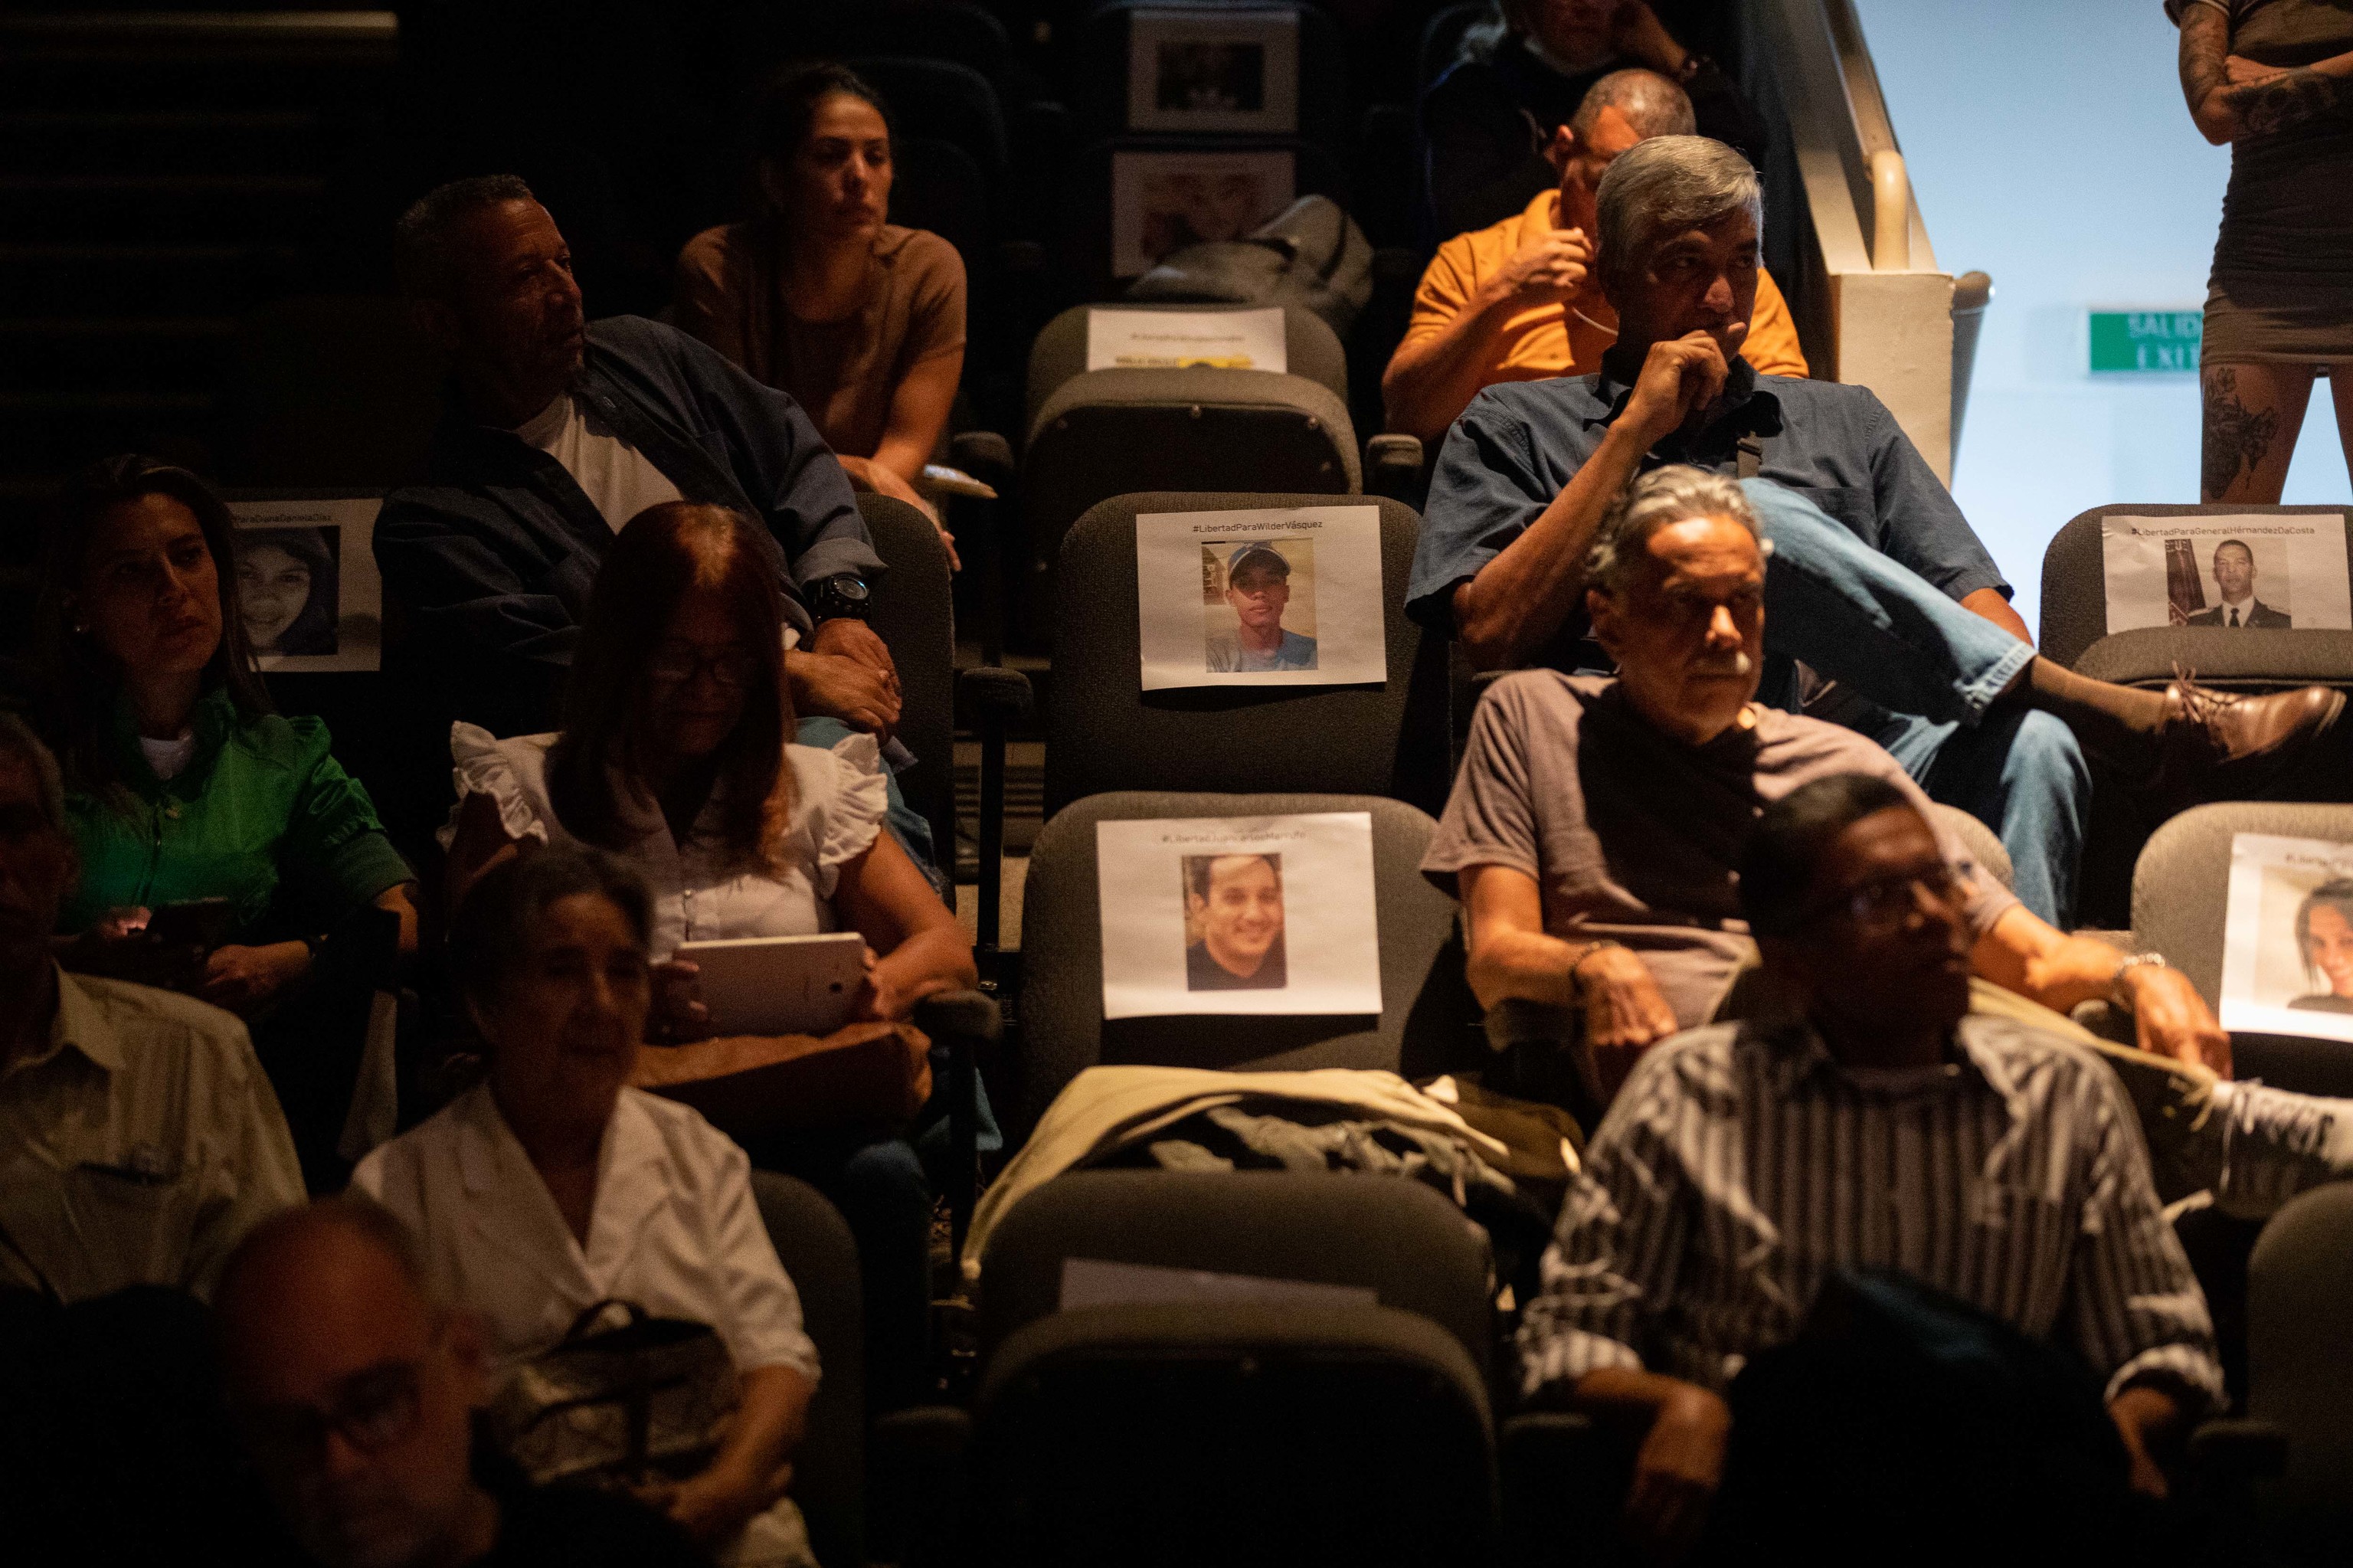 Fotos con imágenes de presos políticos venezolanos, durante un concierto, en Caracas.